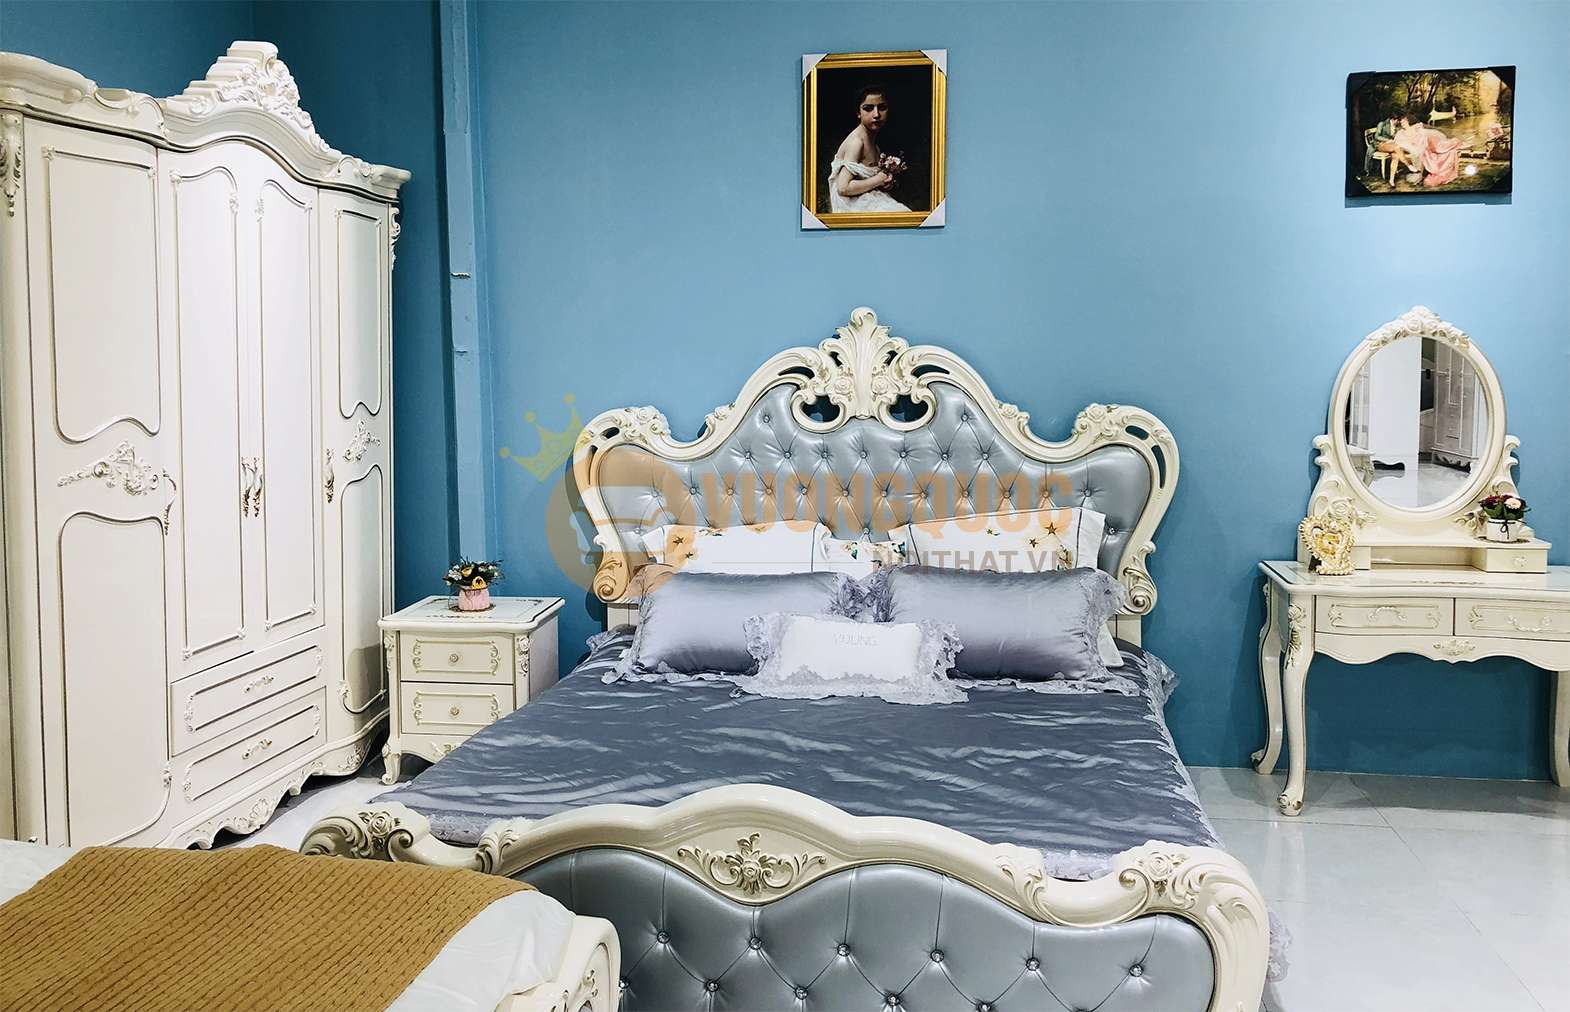 Giường ngủ tân cổ điển kiểu dáng quý tộc JVN618G sang trọng